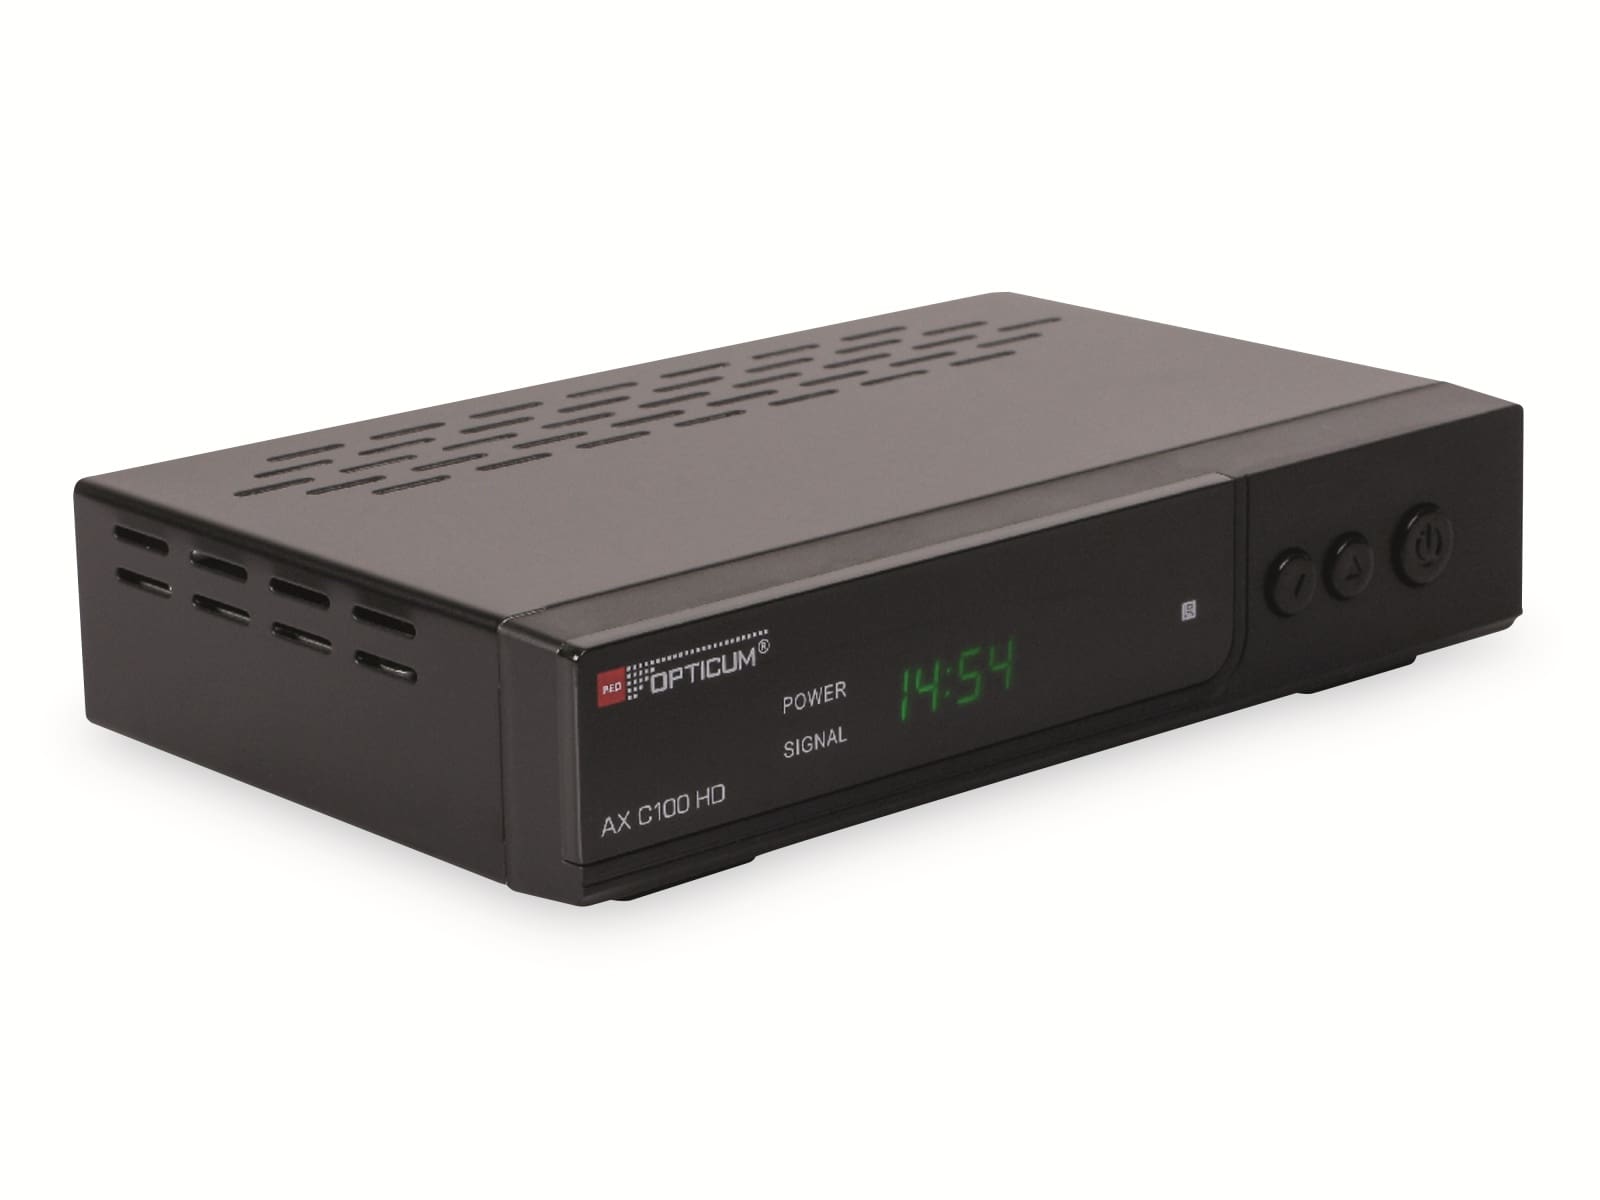 RED OPTICUM DVB-C HDTV-Receiver AX C100 HD, schwarz